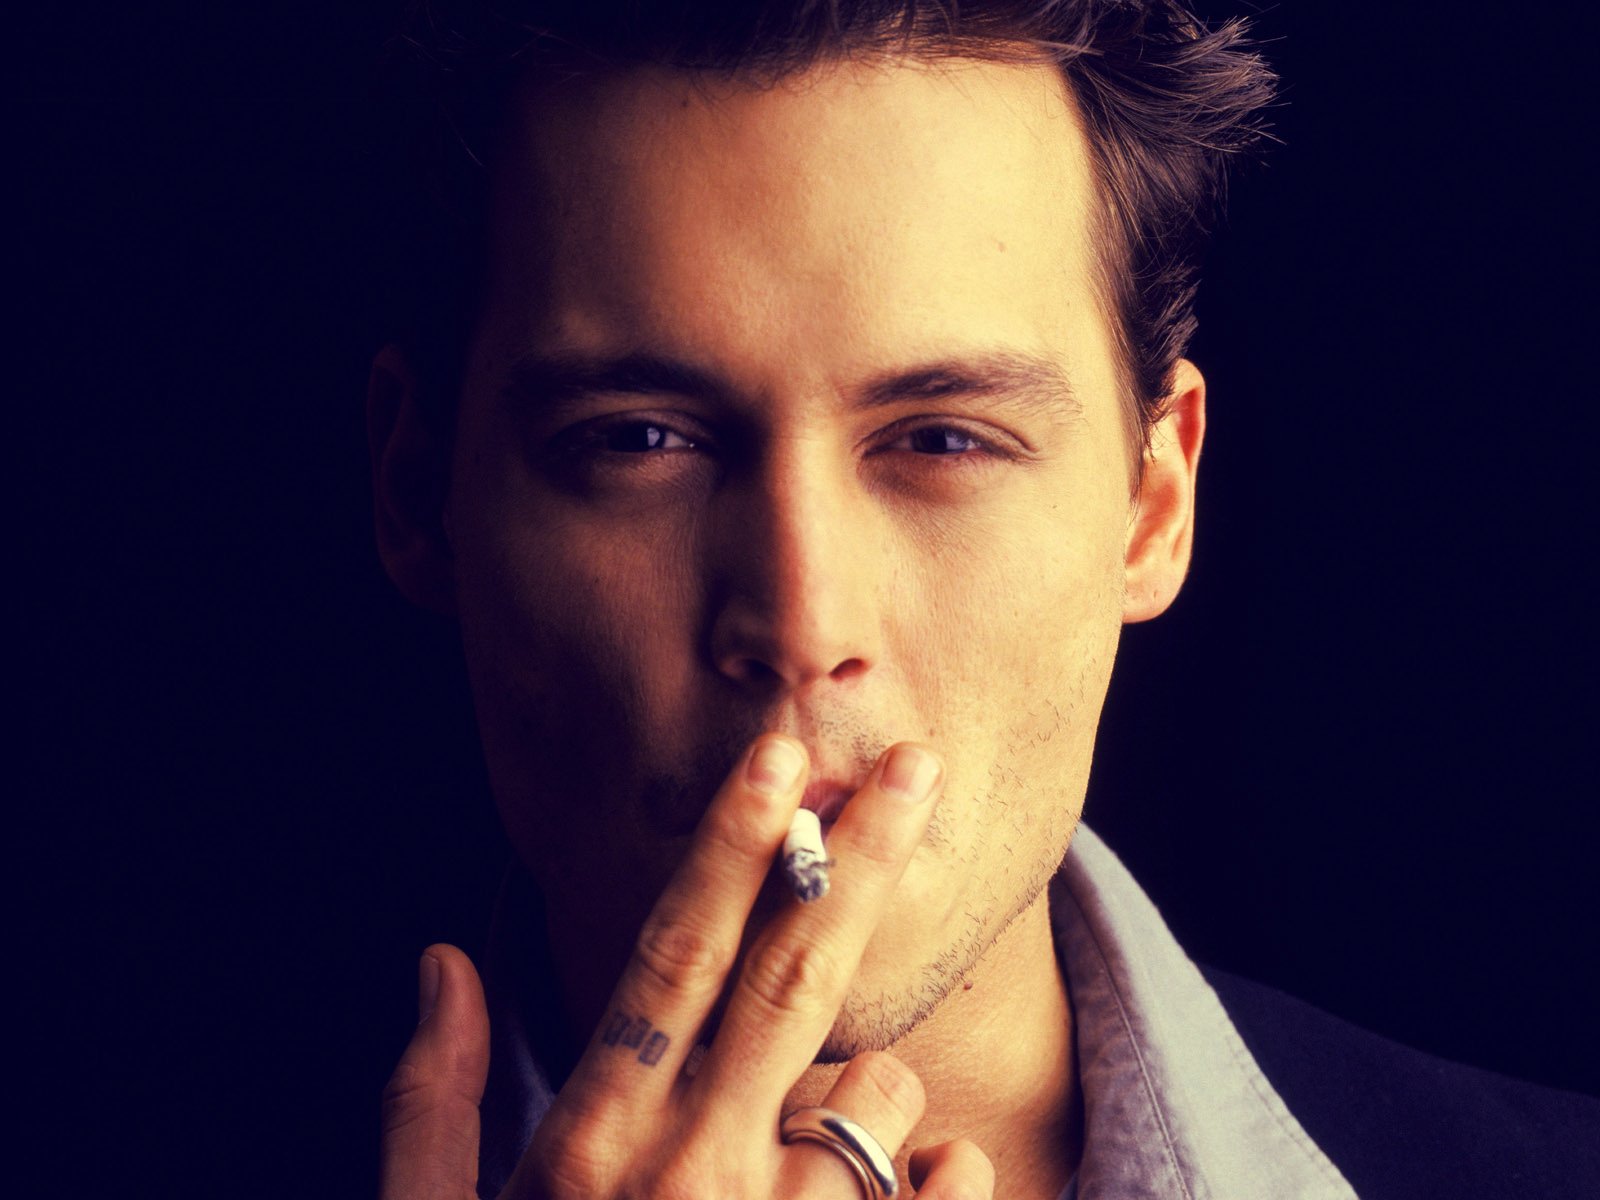 джонни депп депп актер америка американский сигареты глаза лицо кольцо тату...